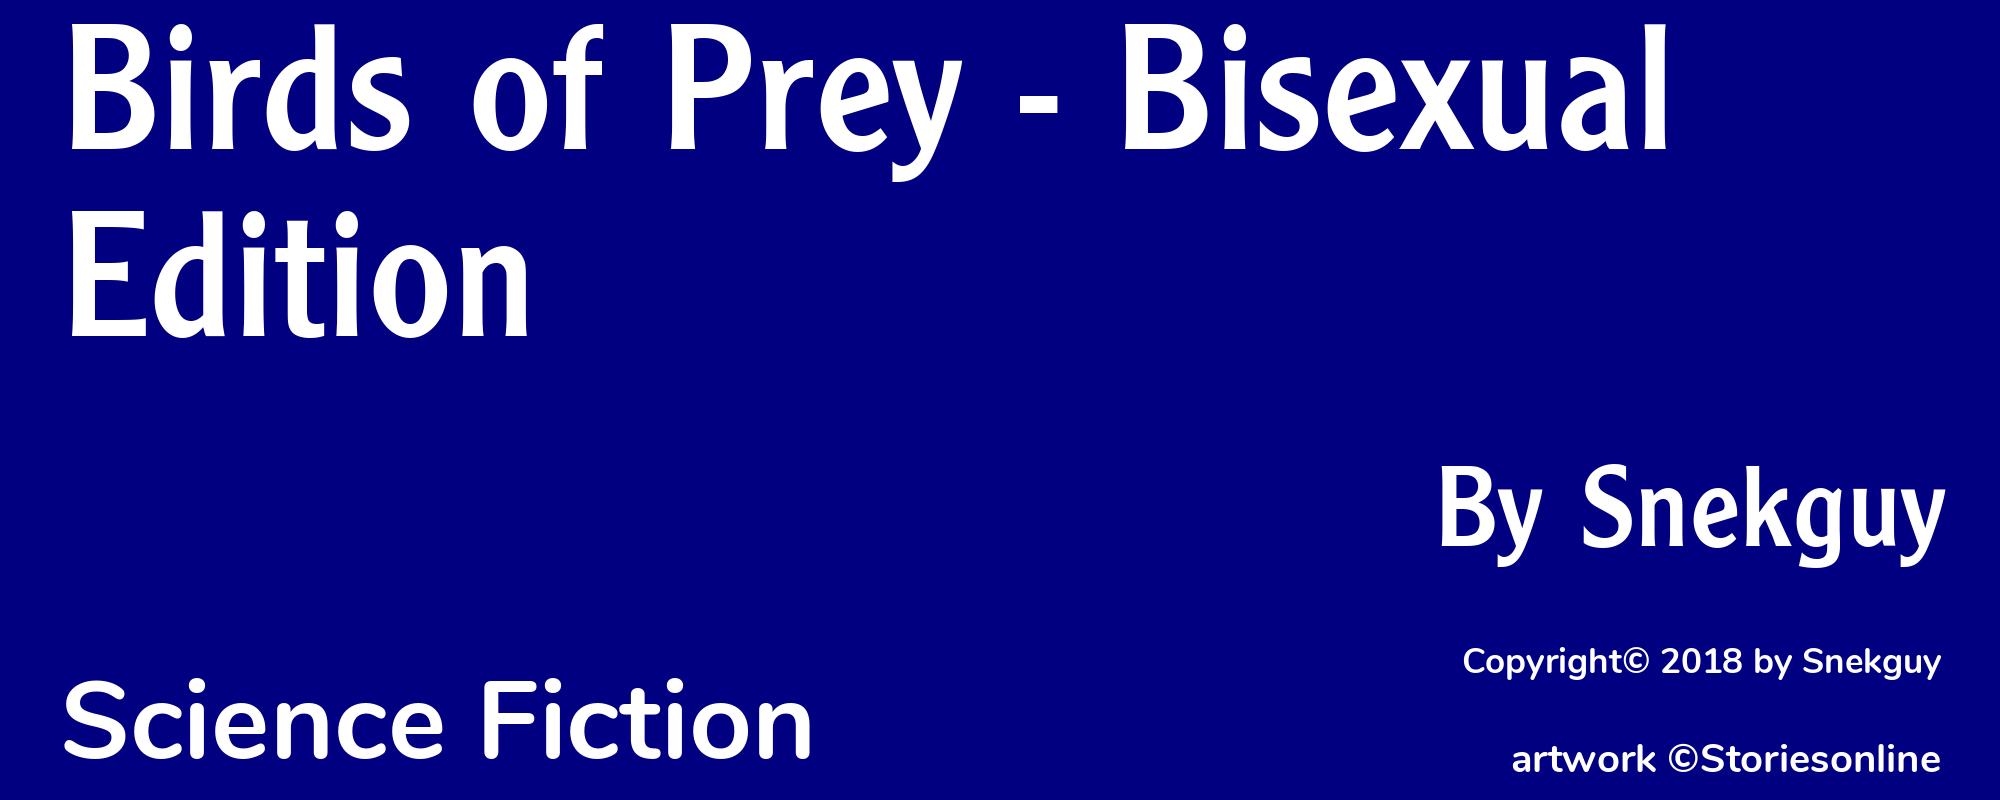 Birds of Prey - Bisexual Edition - Cover